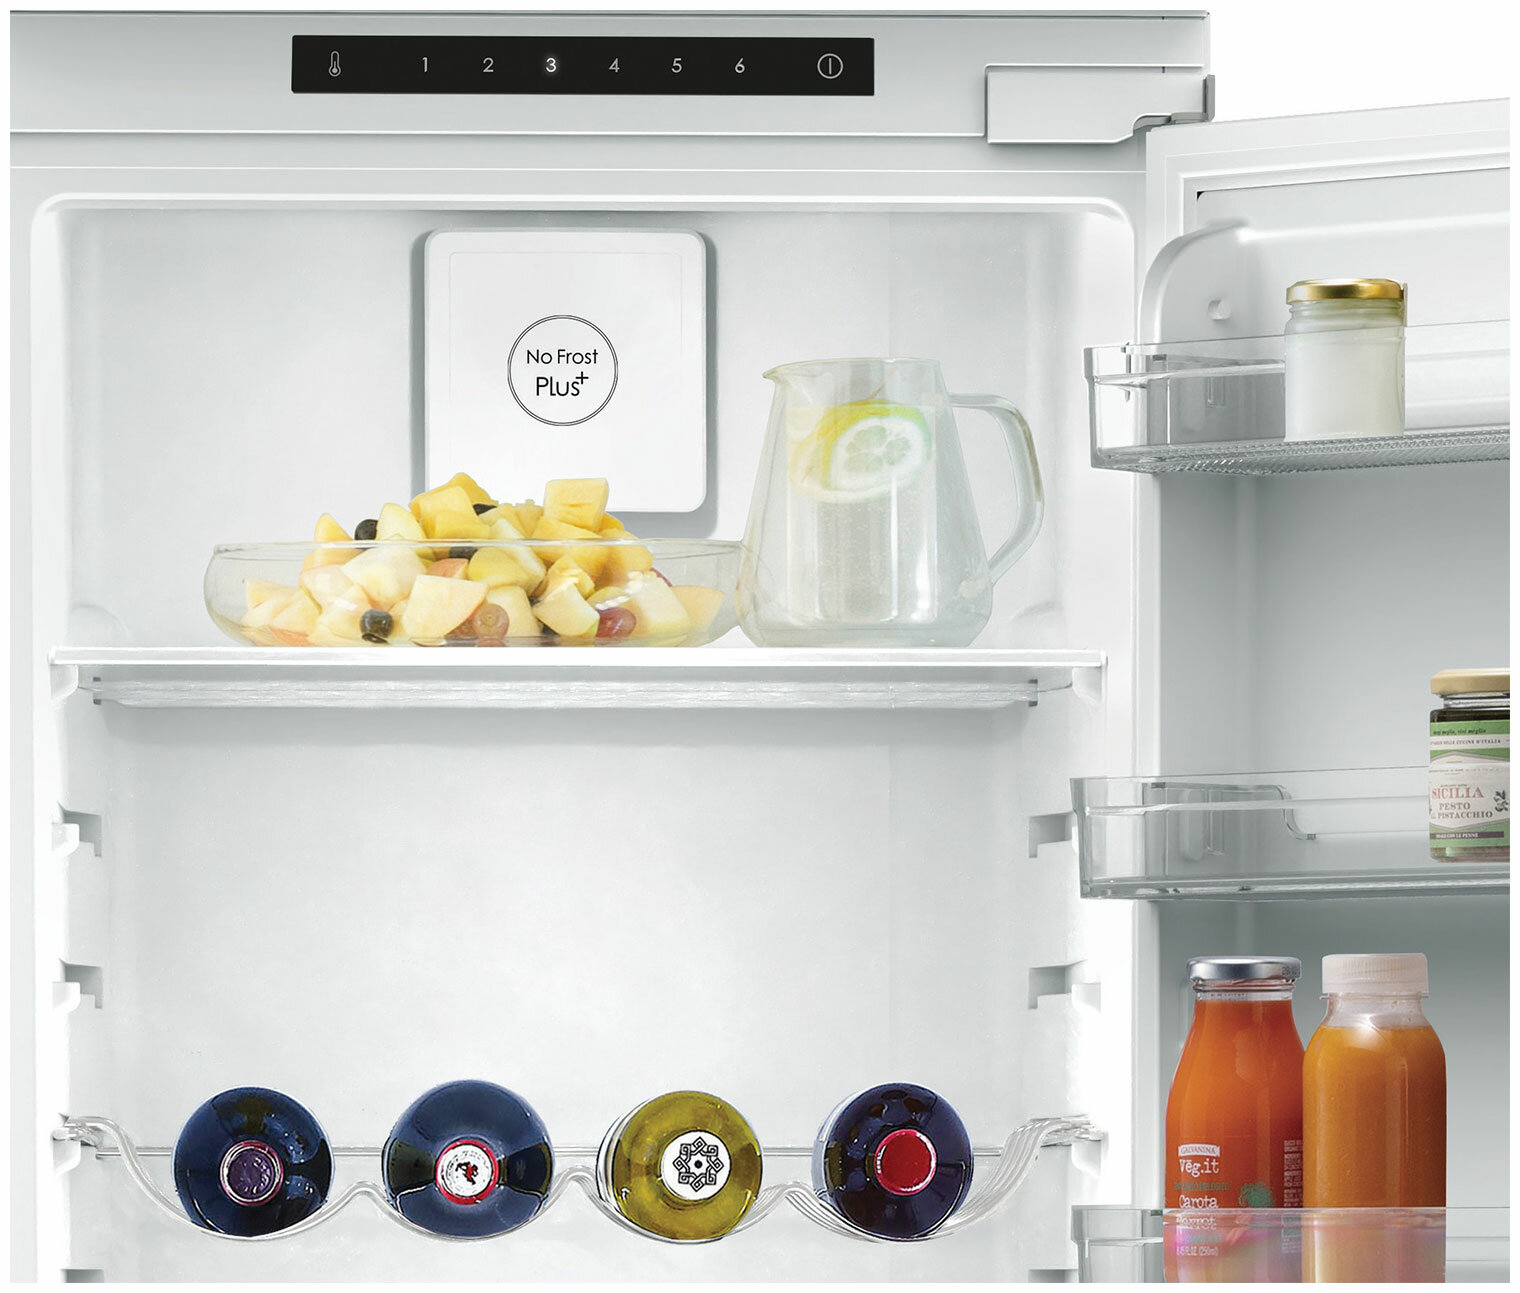 Встраиваемый двухкамерный холодильник Candy BCBF 192 F